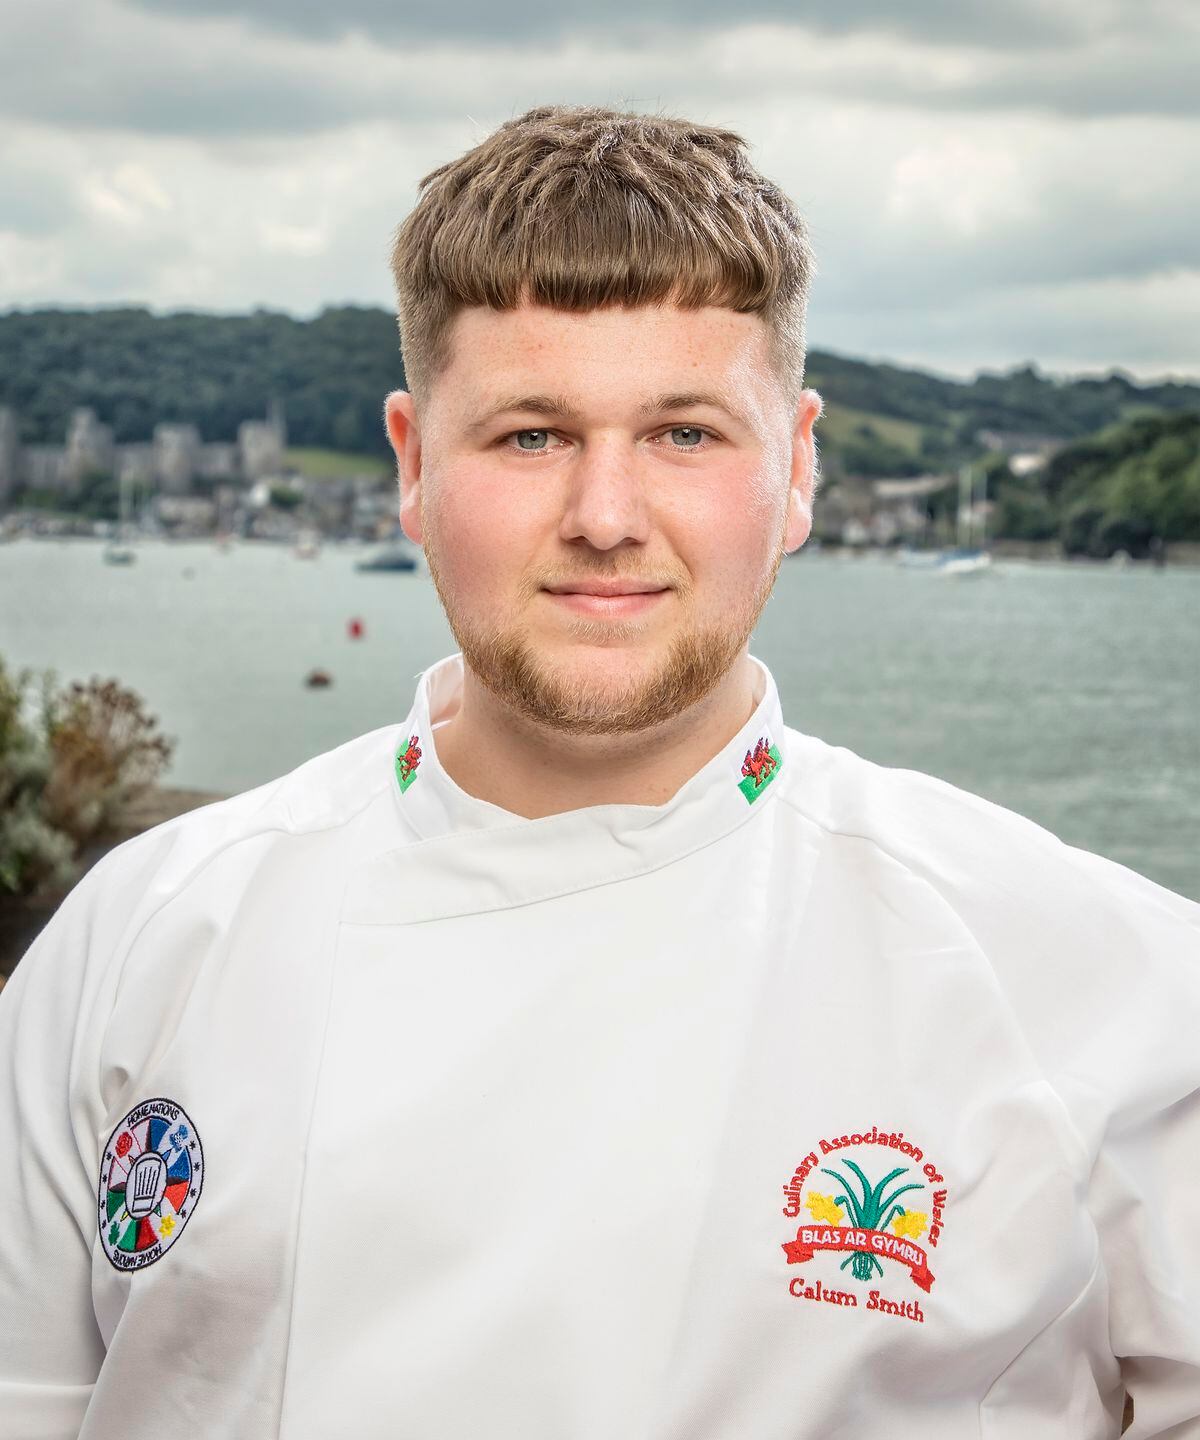 Calum Smith, Junior Culinary Team Wales captain